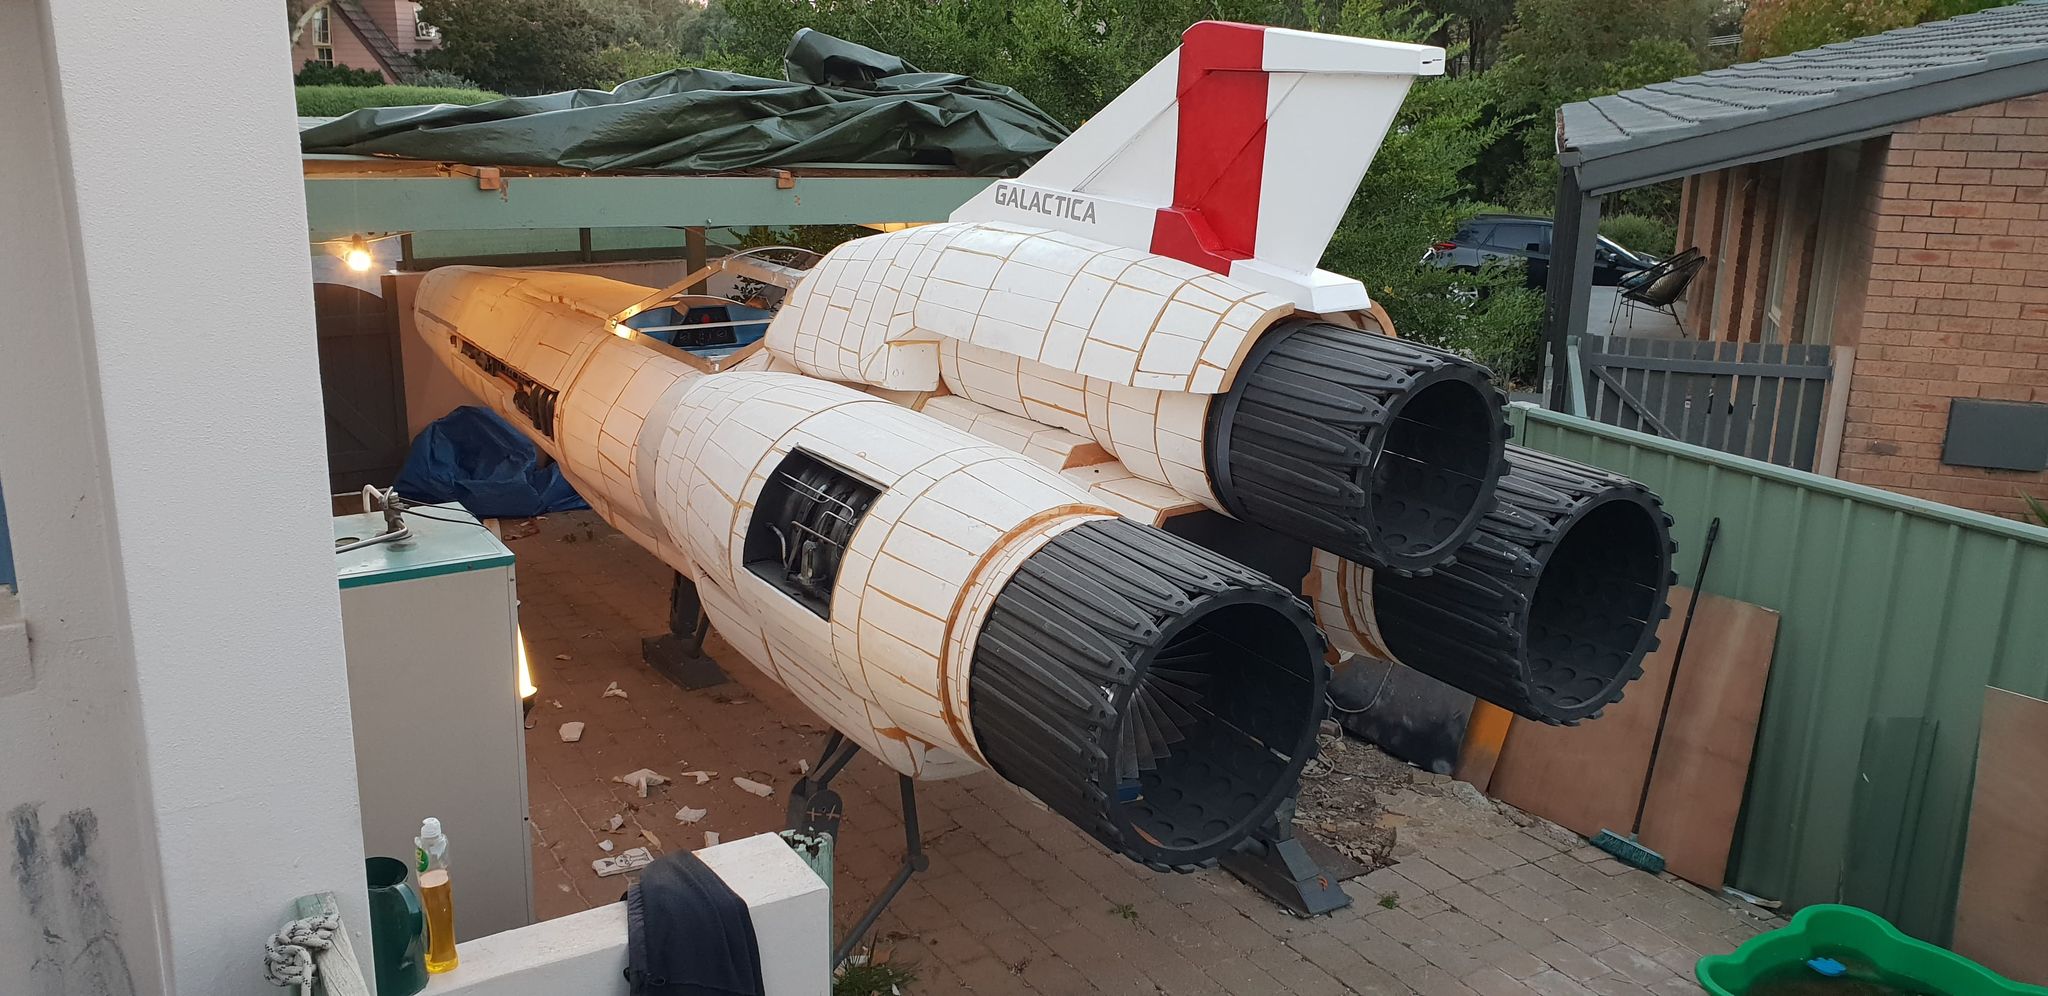 在后院建造宇宙飞船，堪培拉这名“52岁的书呆子”实现儿时科幻梦